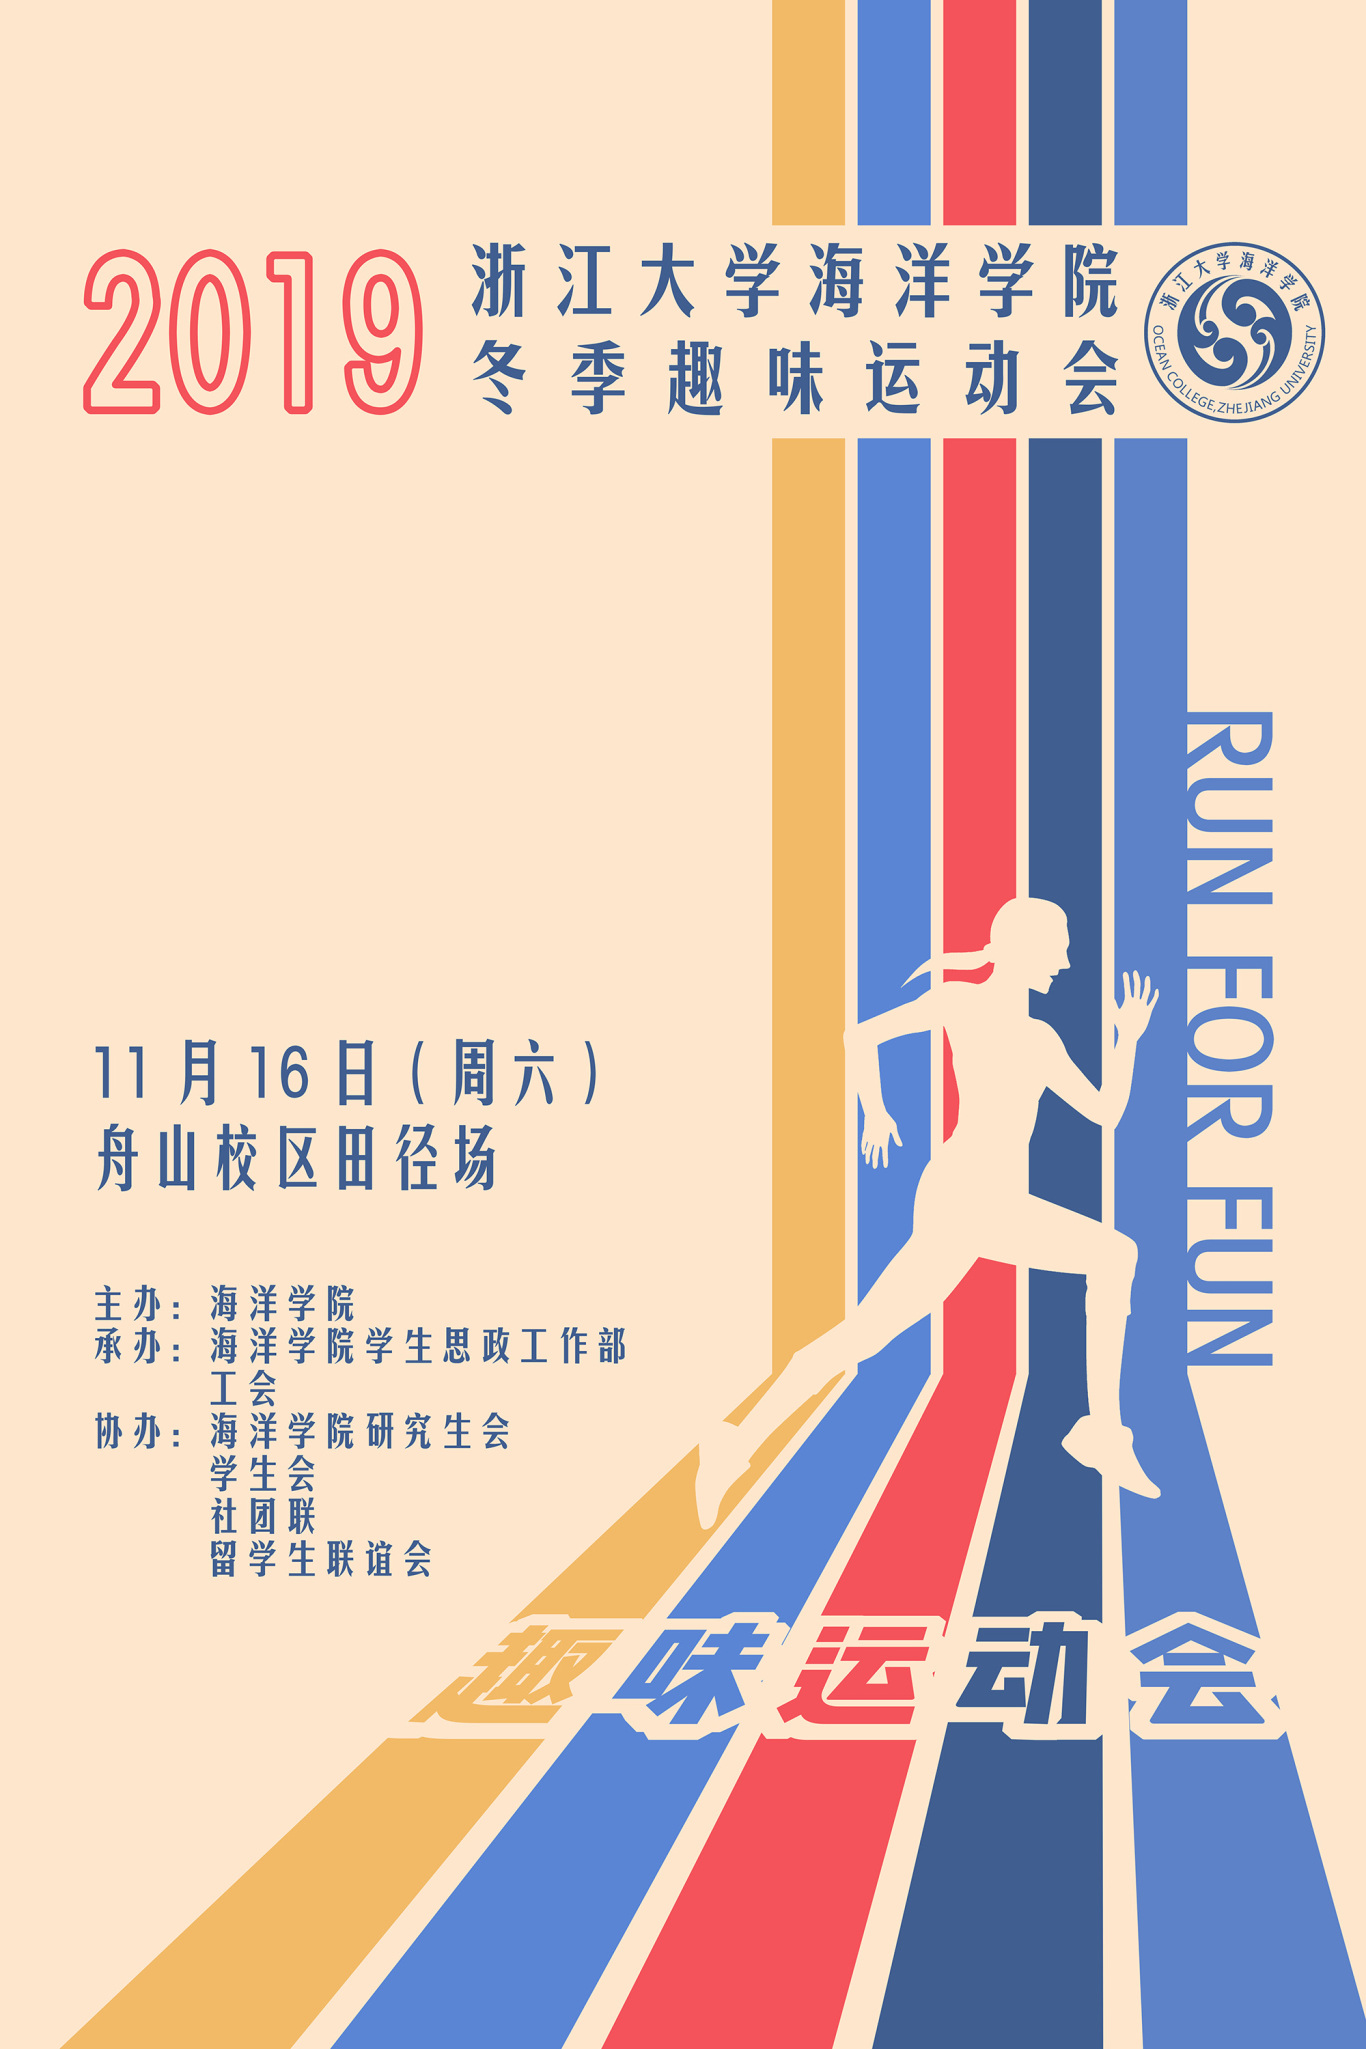 浙江大学海洋学院趣味运动会海报等设计图0